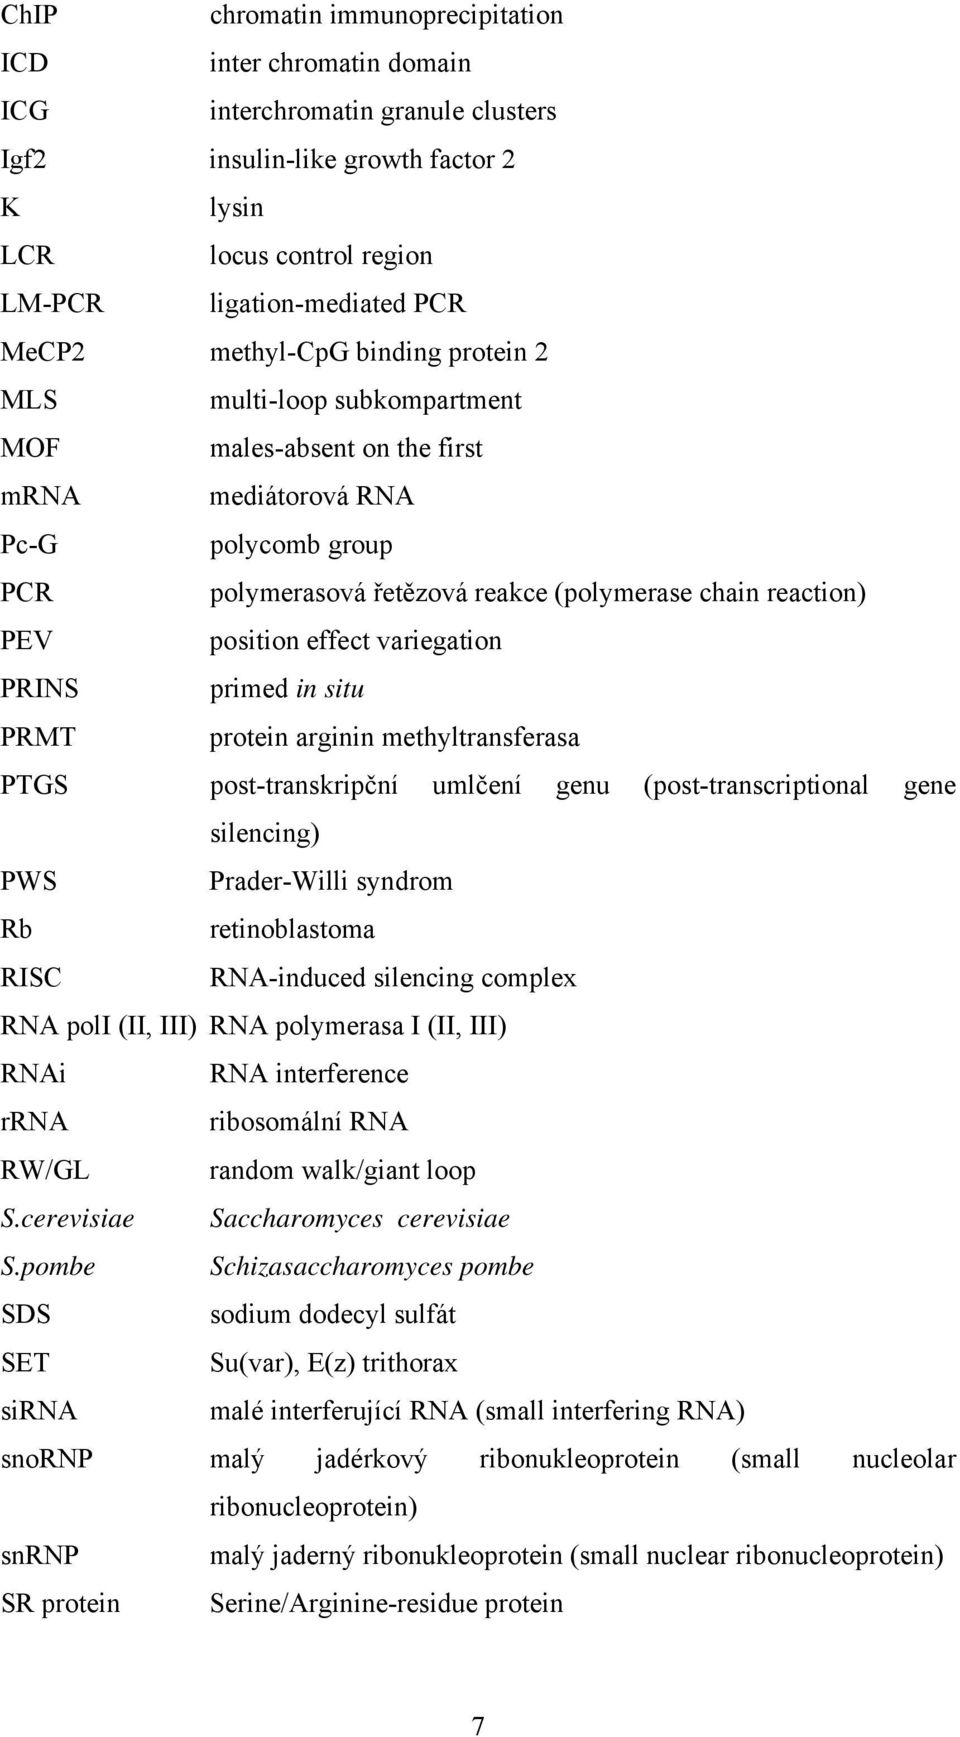 position effect variegation PRINS primed in situ PRMT protein arginin methyltransferasa PTGS post-transkripční umlčení genu (post-transcriptional gene silencing) PWS Prader-Willi syndrom Rb